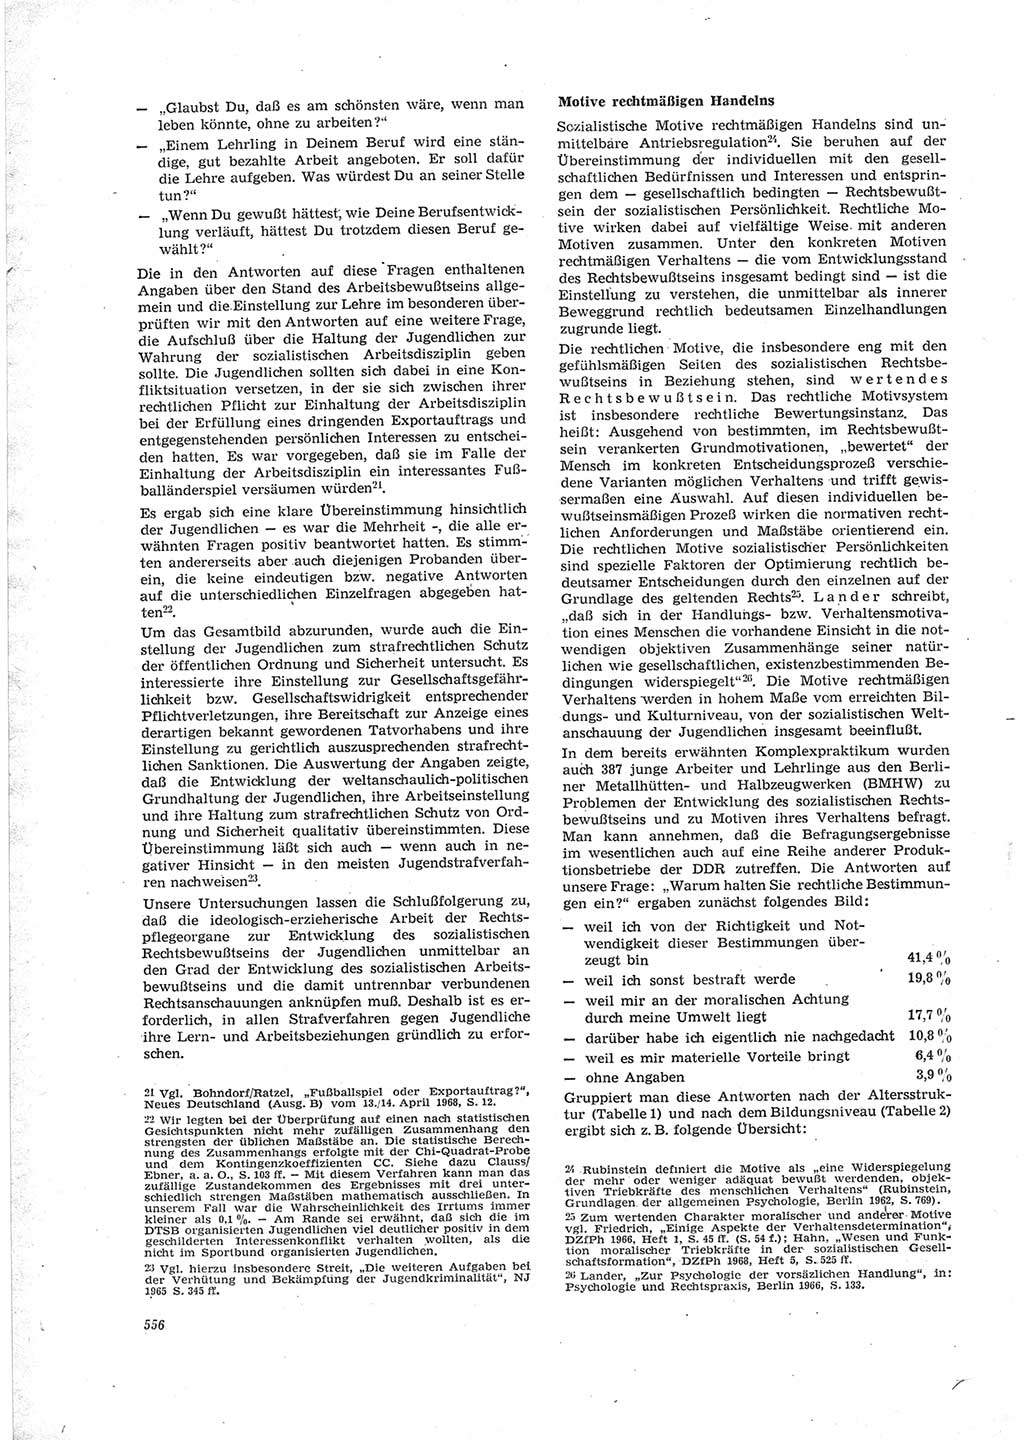 Neue Justiz (NJ), Zeitschrift für Recht und Rechtswissenschaft [Deutsche Demokratische Republik (DDR)], 23. Jahrgang 1969, Seite 556 (NJ DDR 1969, S. 556)